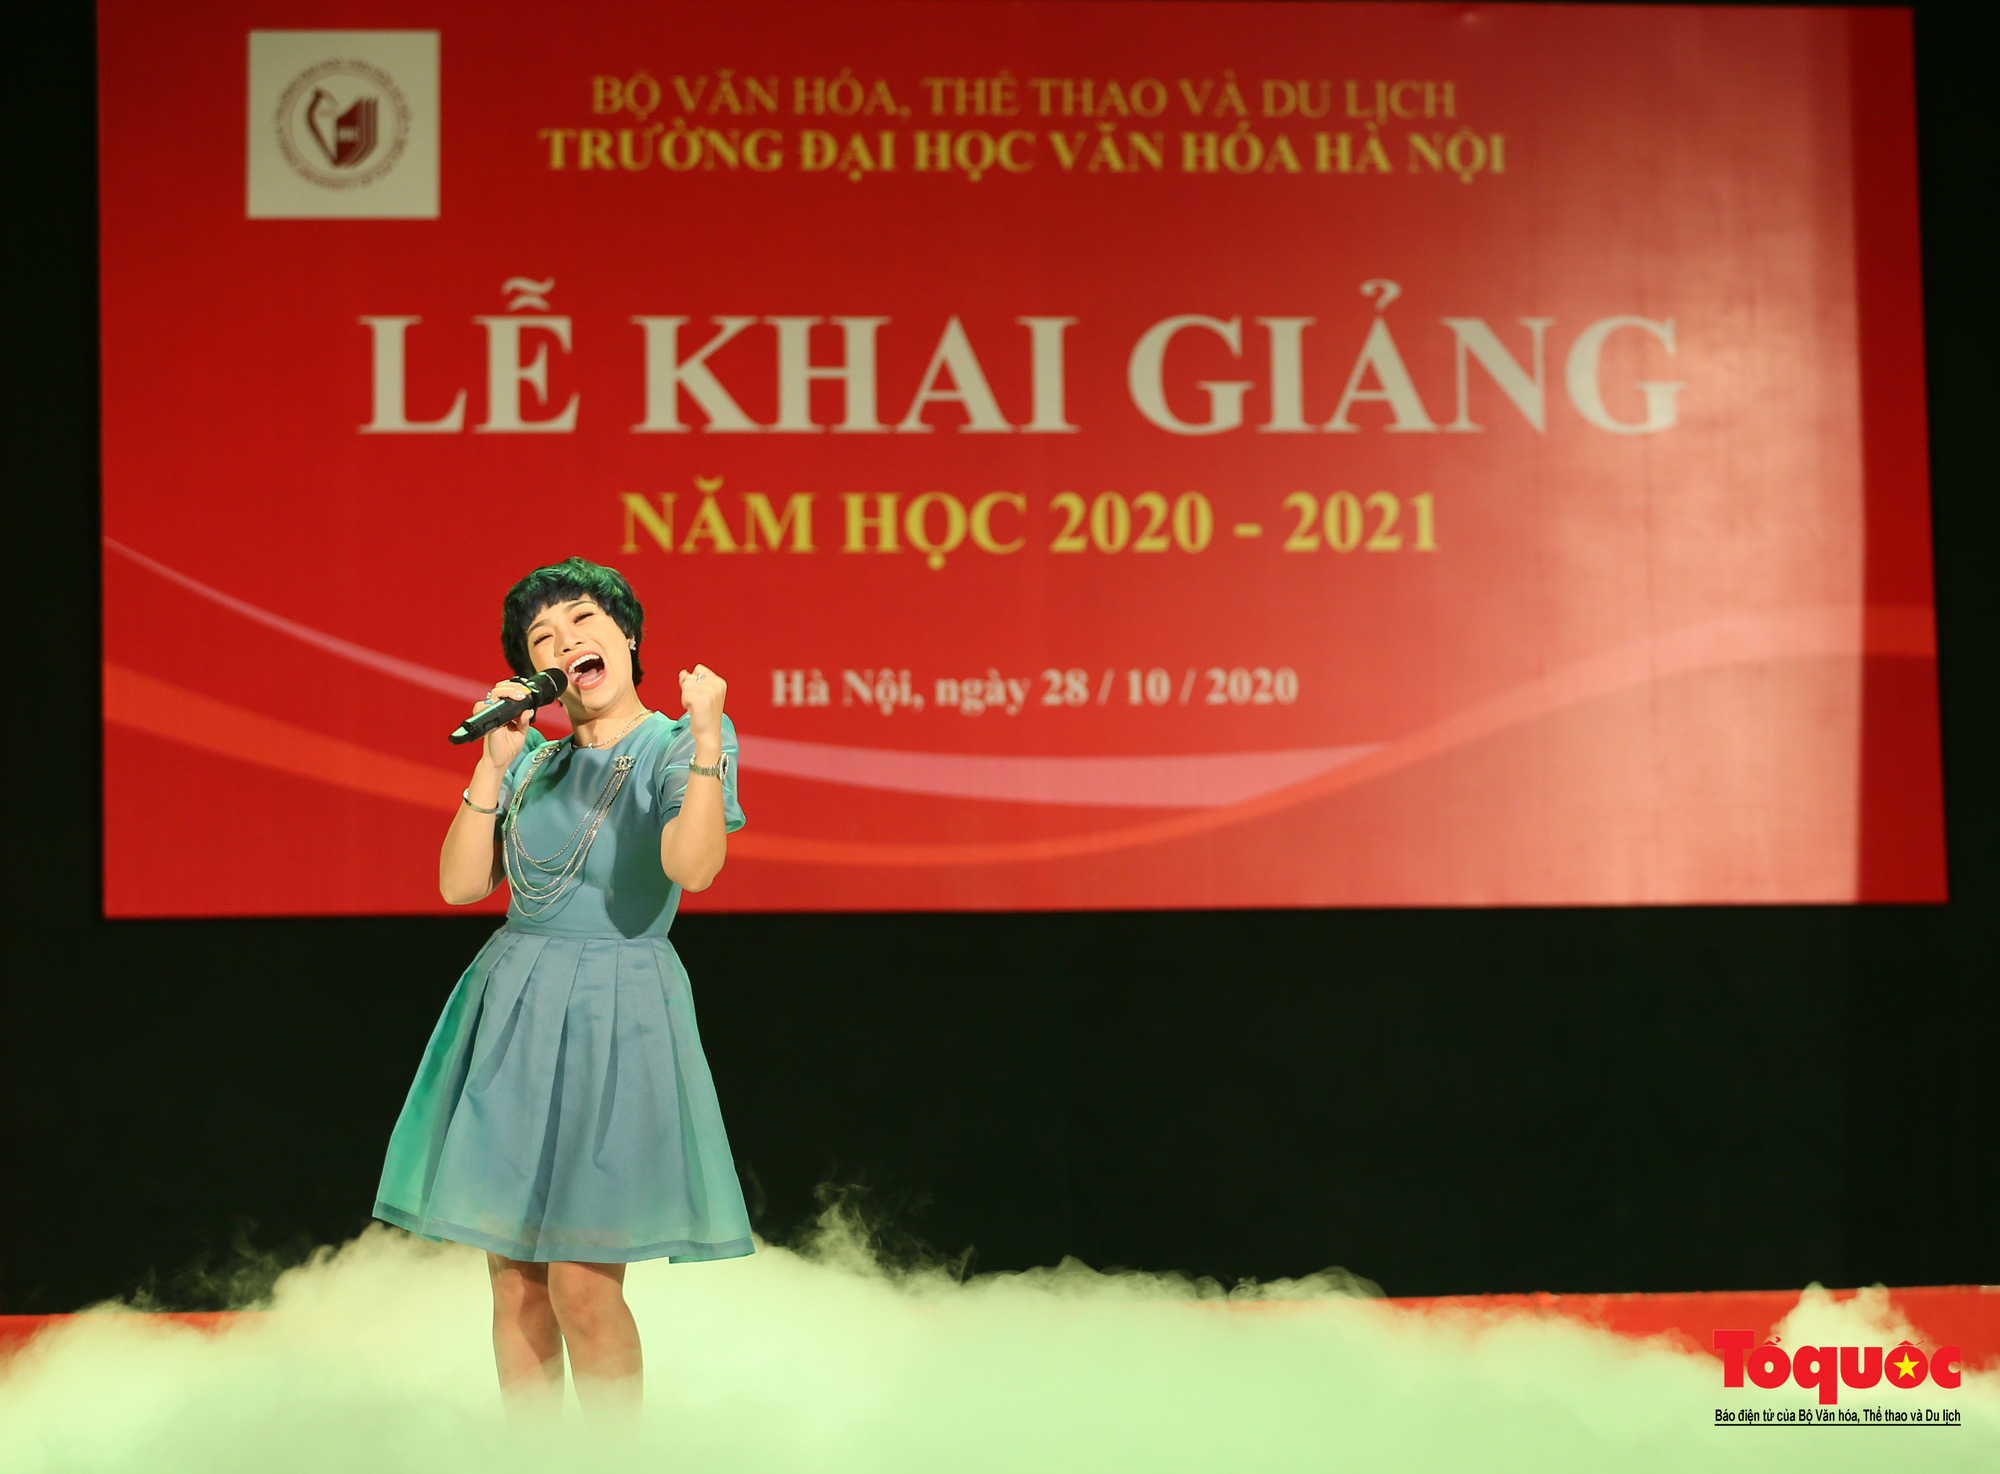 Đại học Văn hóa Hà Nội tiếp tục khẳng định là nơi đào tạo cán bộ văn hoá lớn nhất cả nước - Ảnh 13.